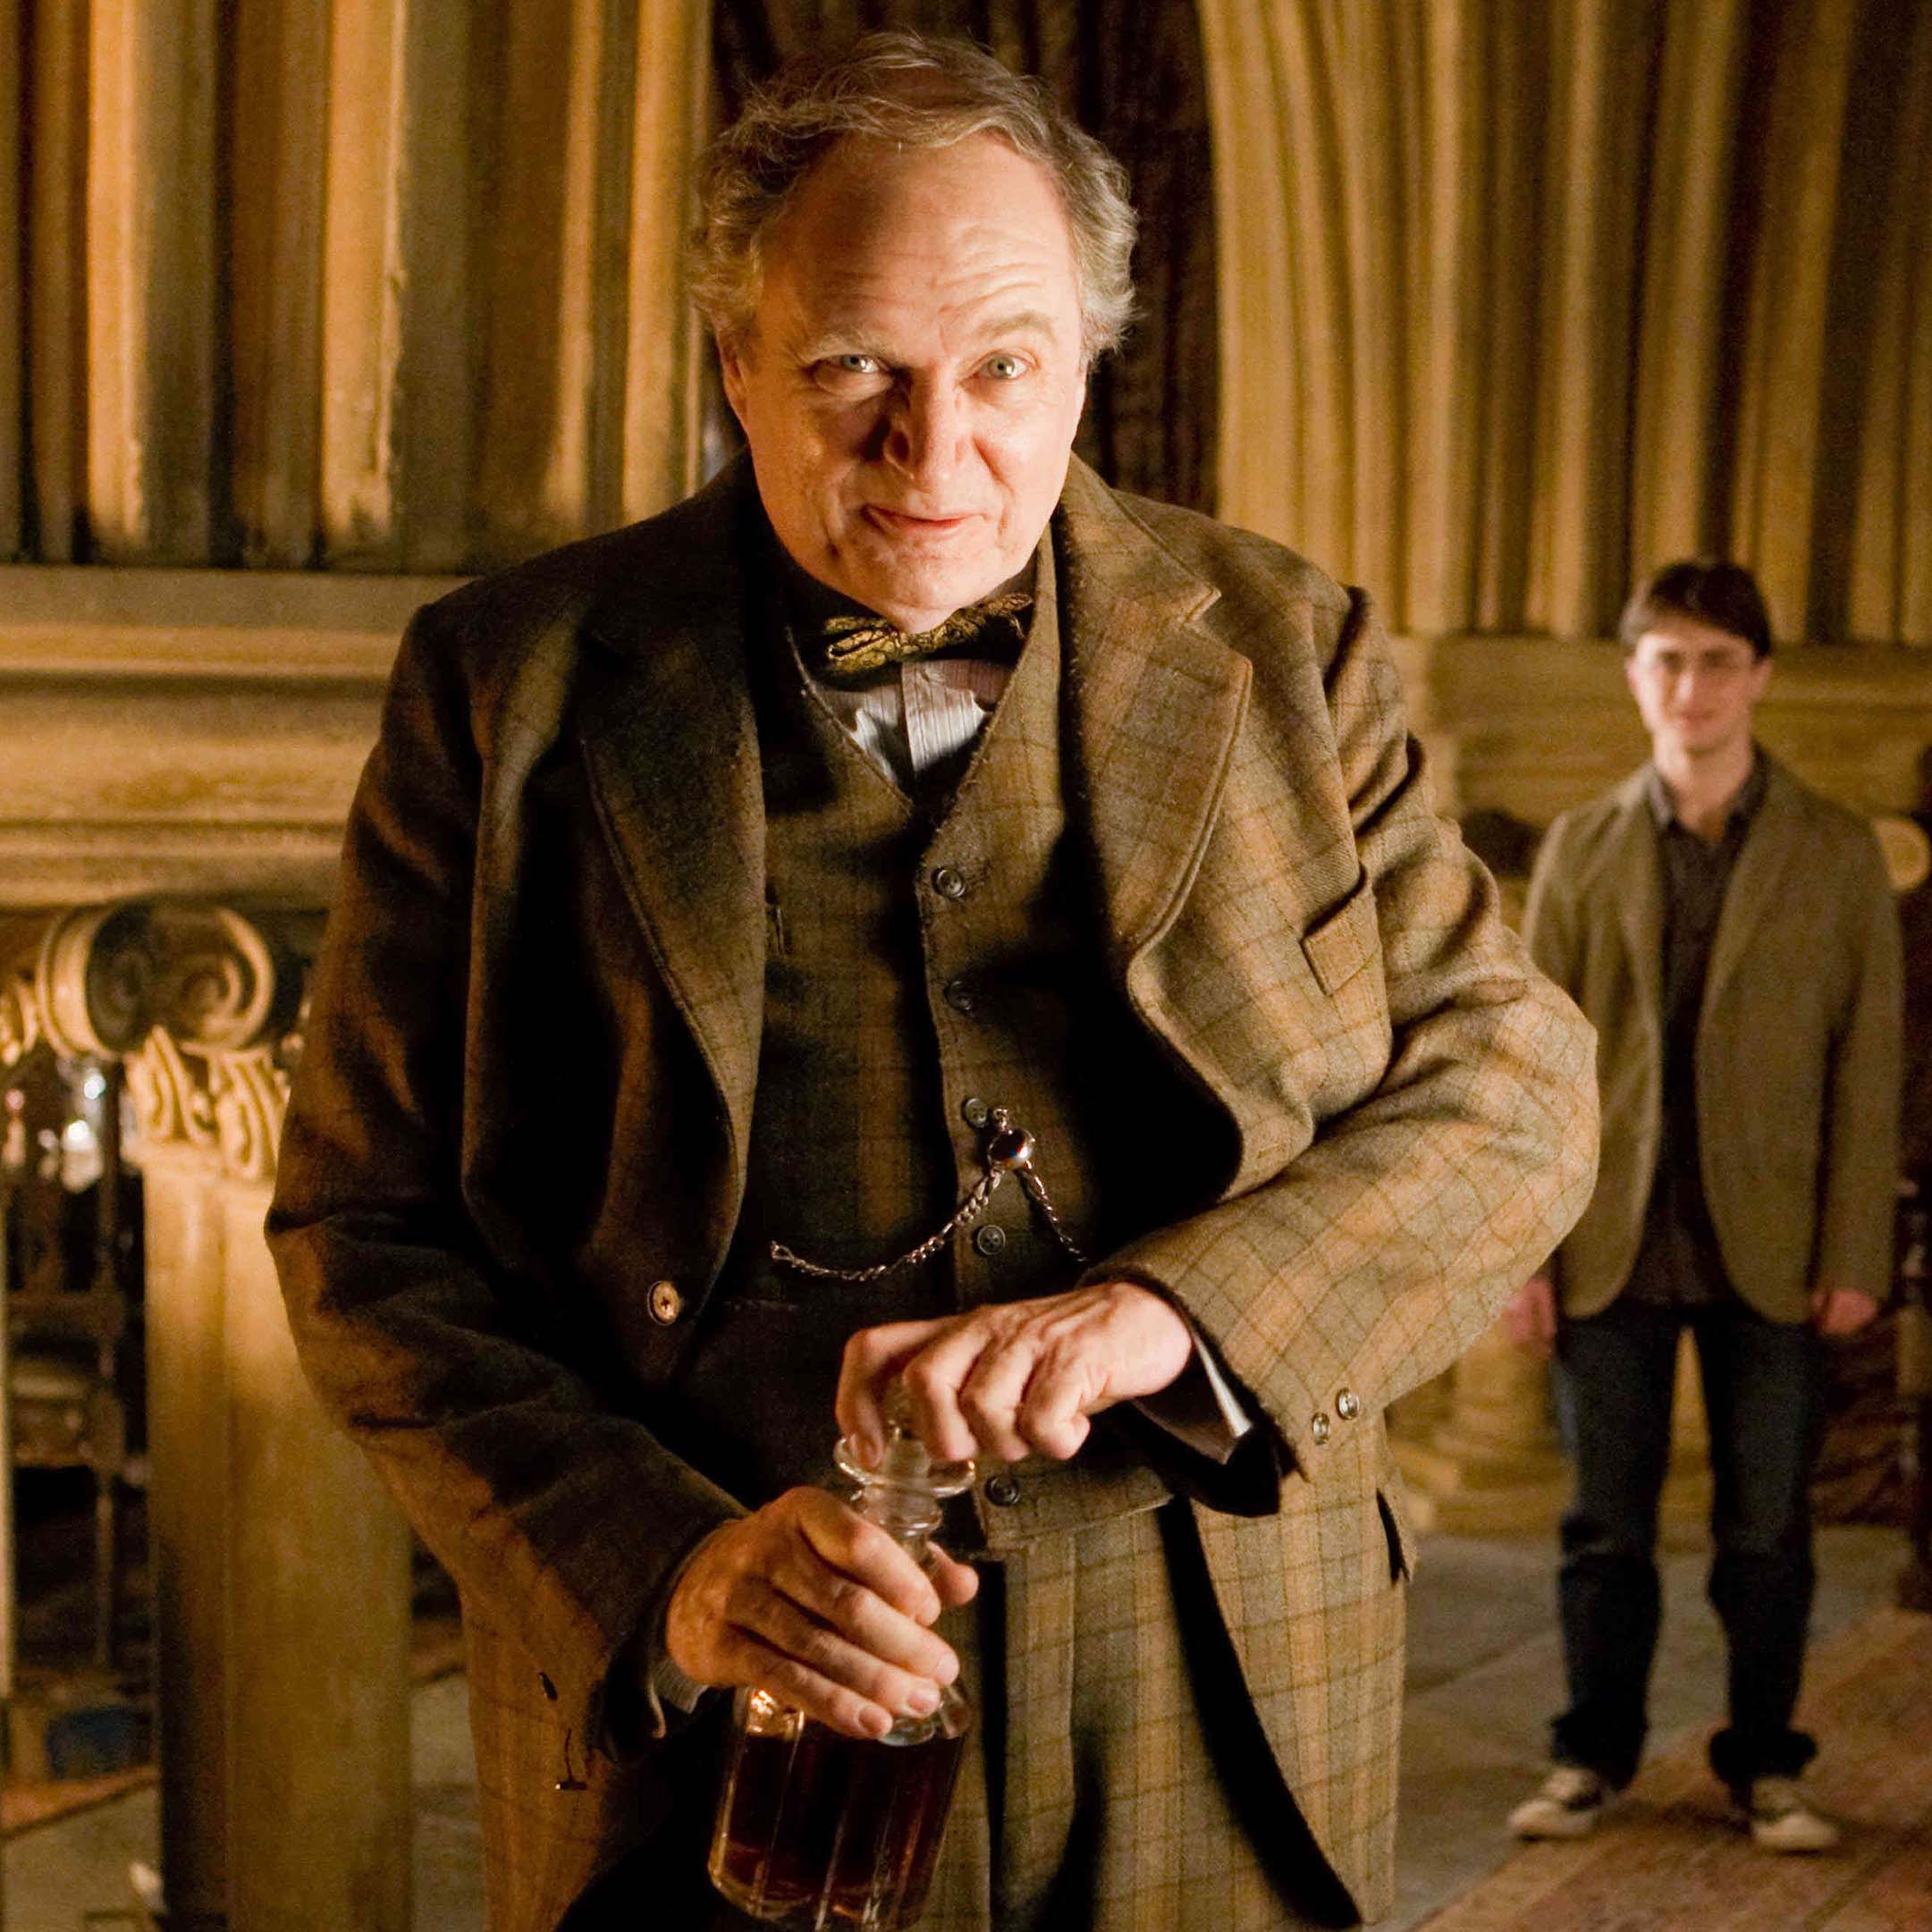 Prof Horace Slughorn, otherwise known as Jim Broadbent. Image: Warner Bros.